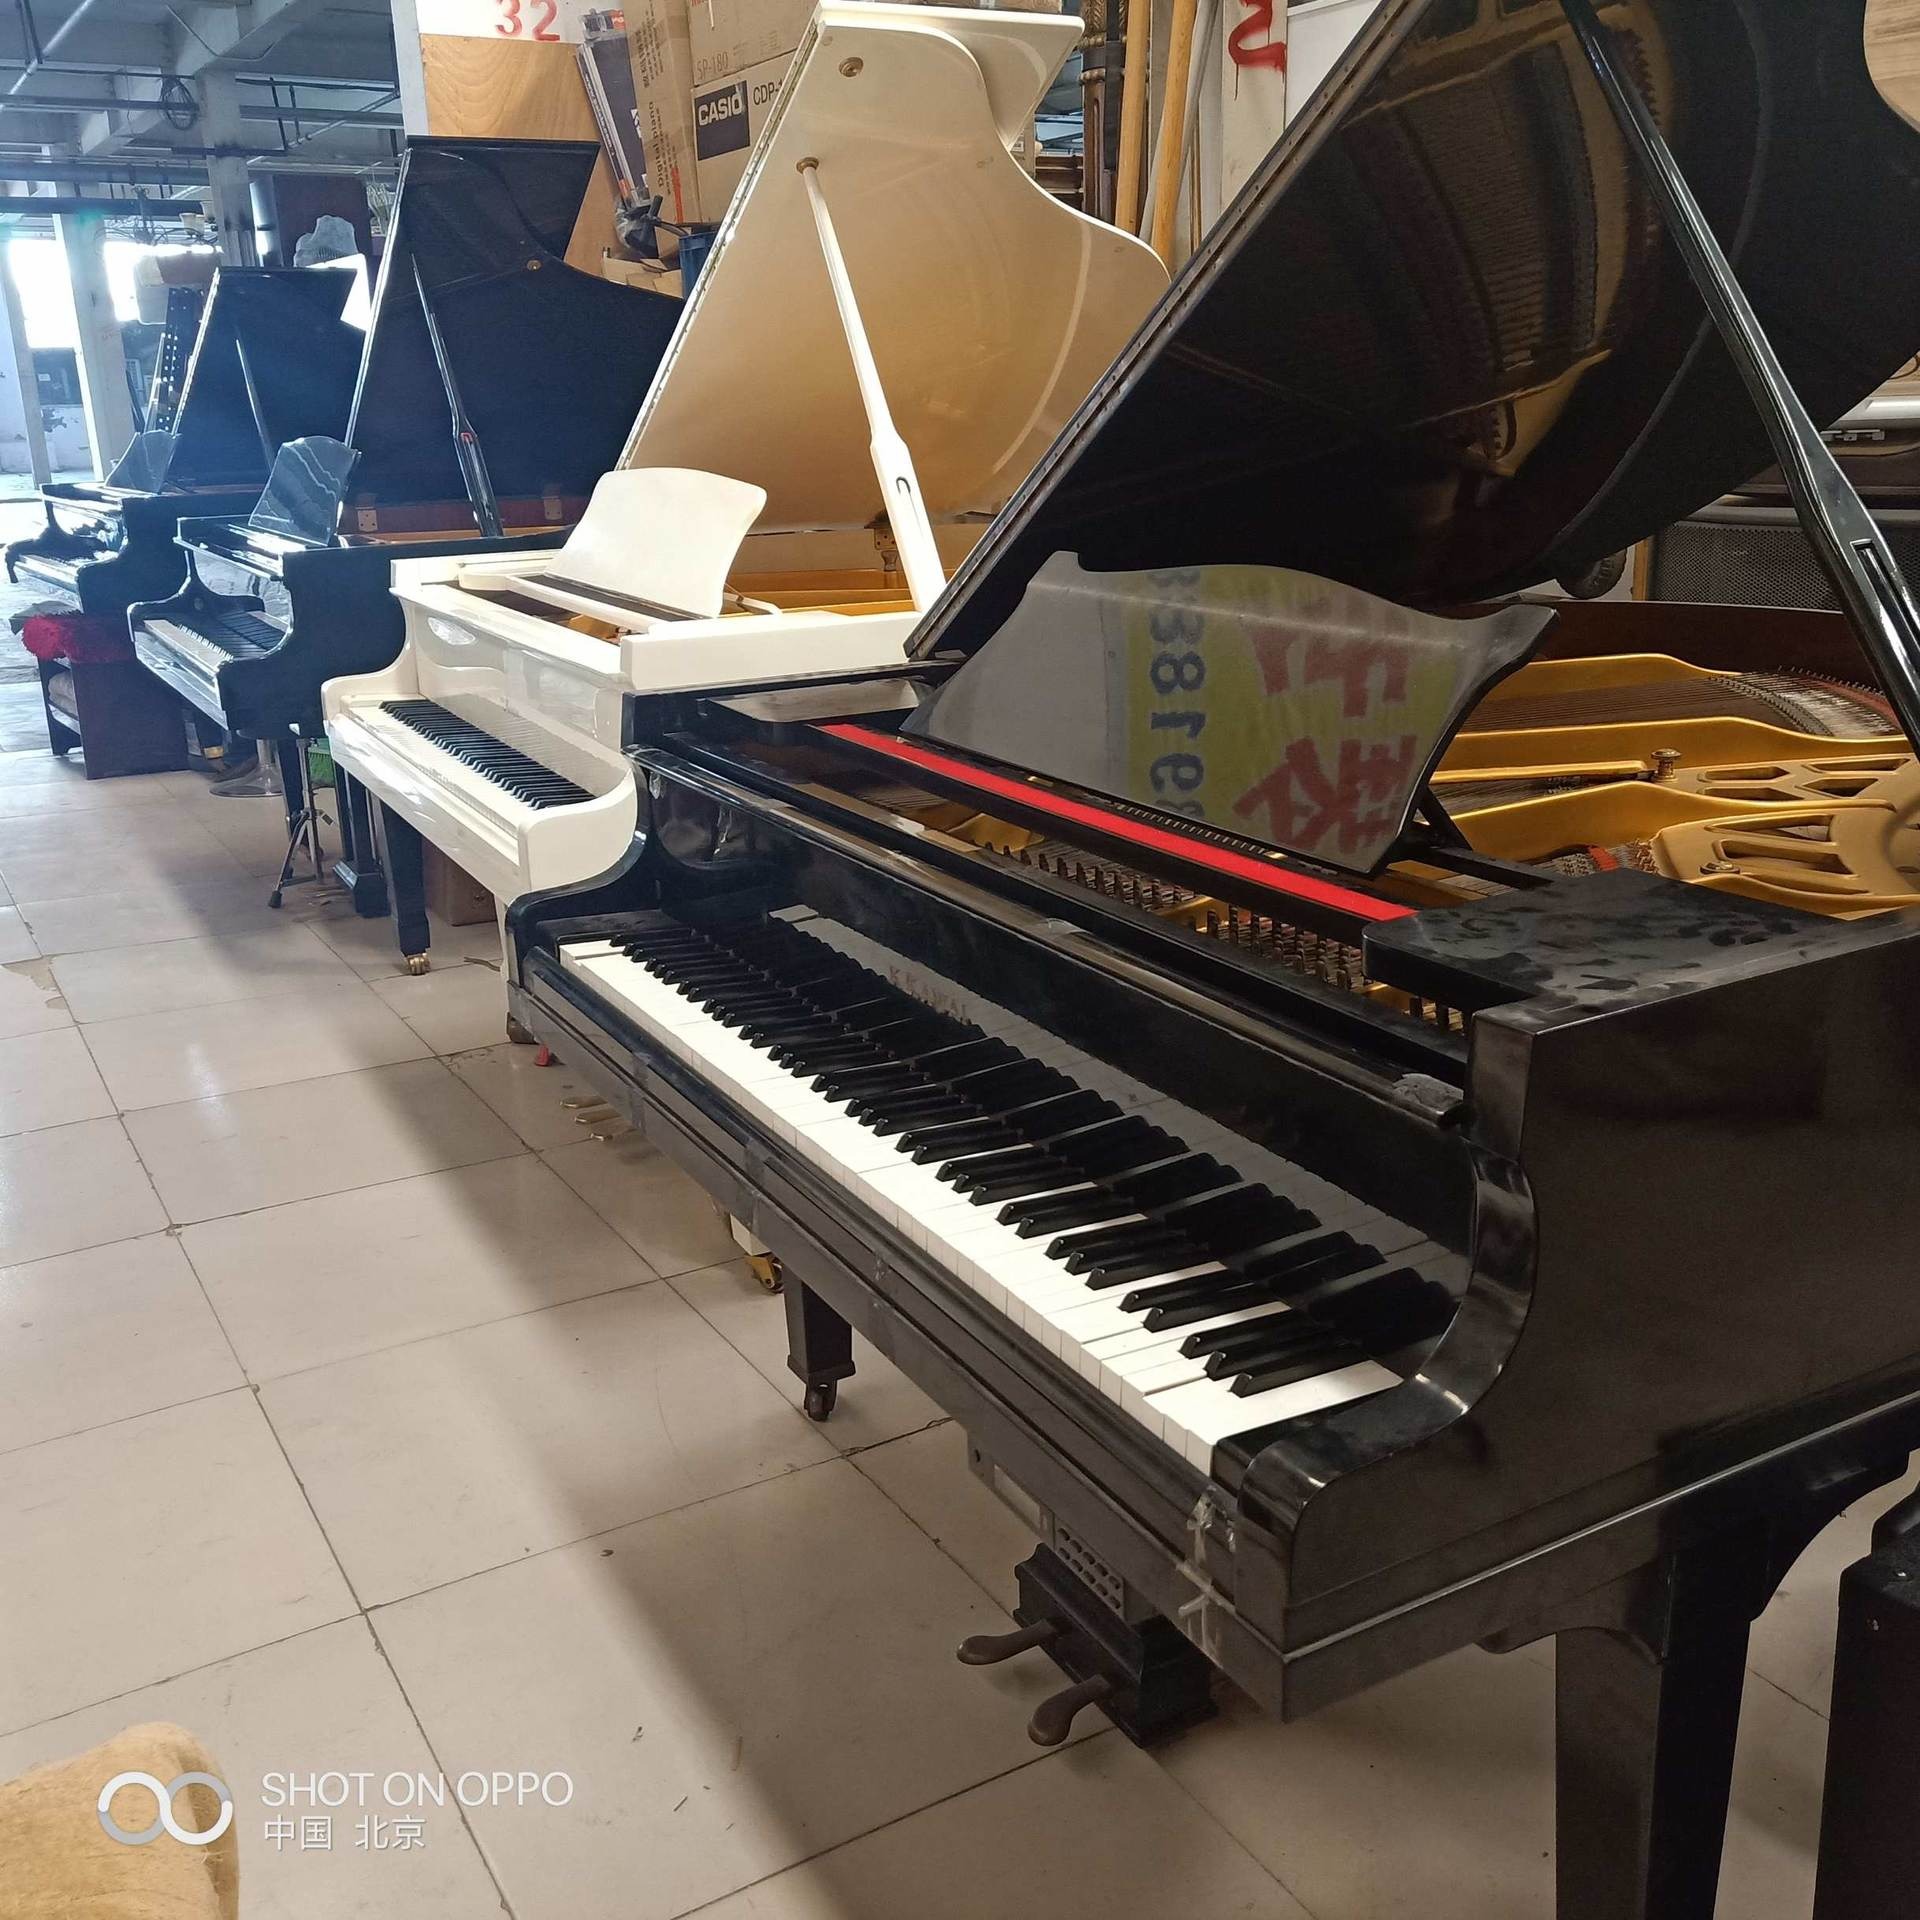 大型钢琴仓库 天通苑二手进口钢琴批发三角钢琴雅马哈卡哇伊立式钢琴销售电钢琴